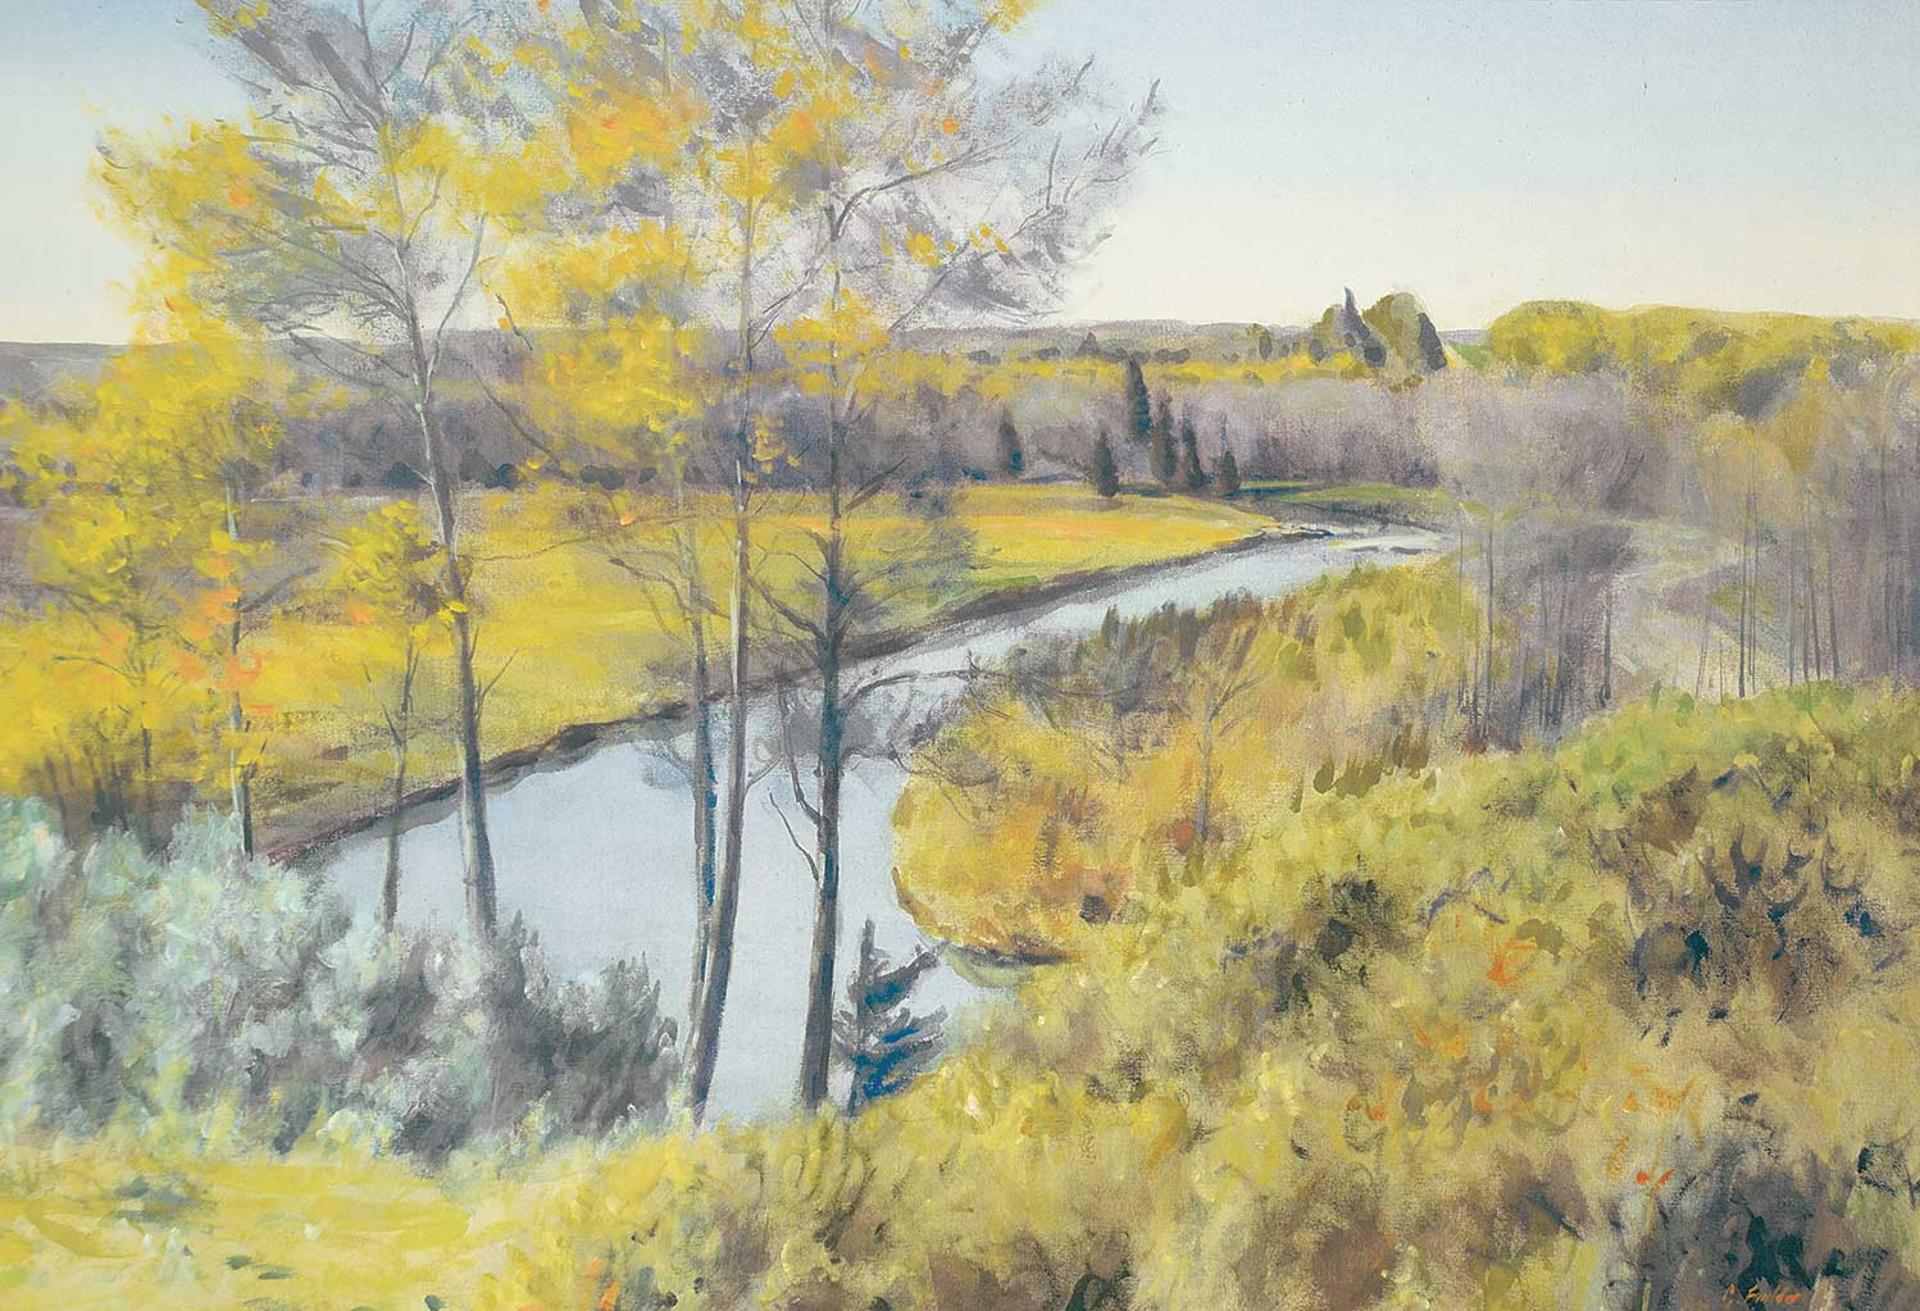 Gerald Faulder (1960) - Red Deer River